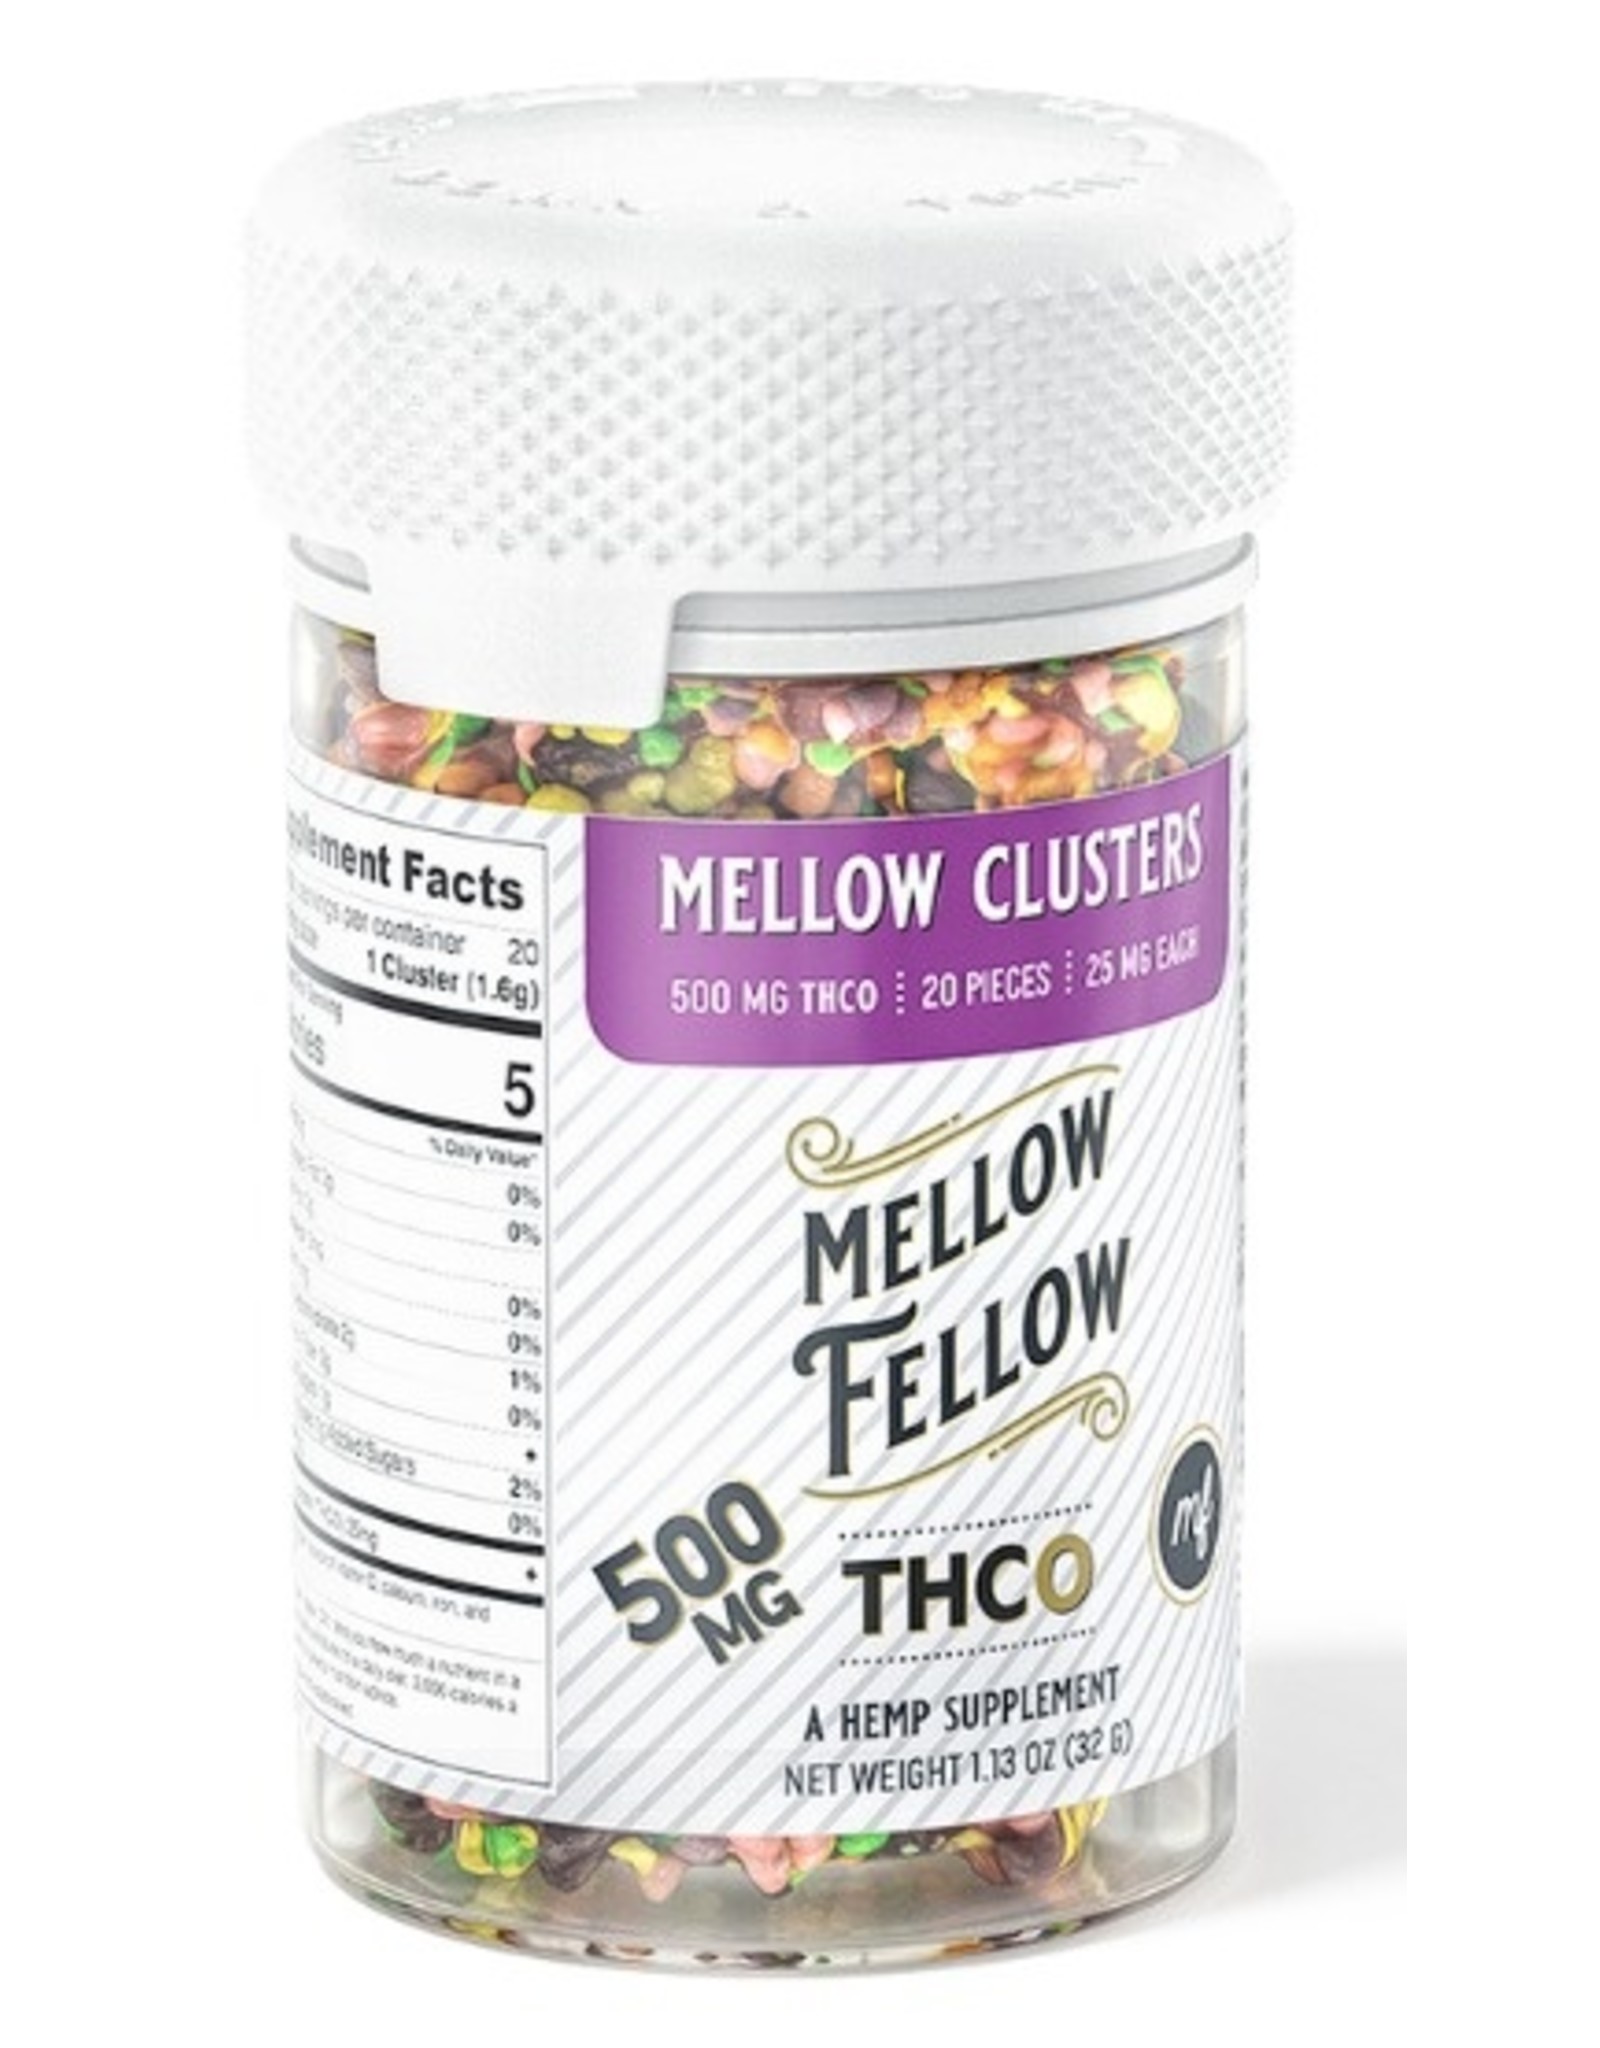 Mellow Fellow Mellow Fellow THC O Mellow Nerd clusters 500mg